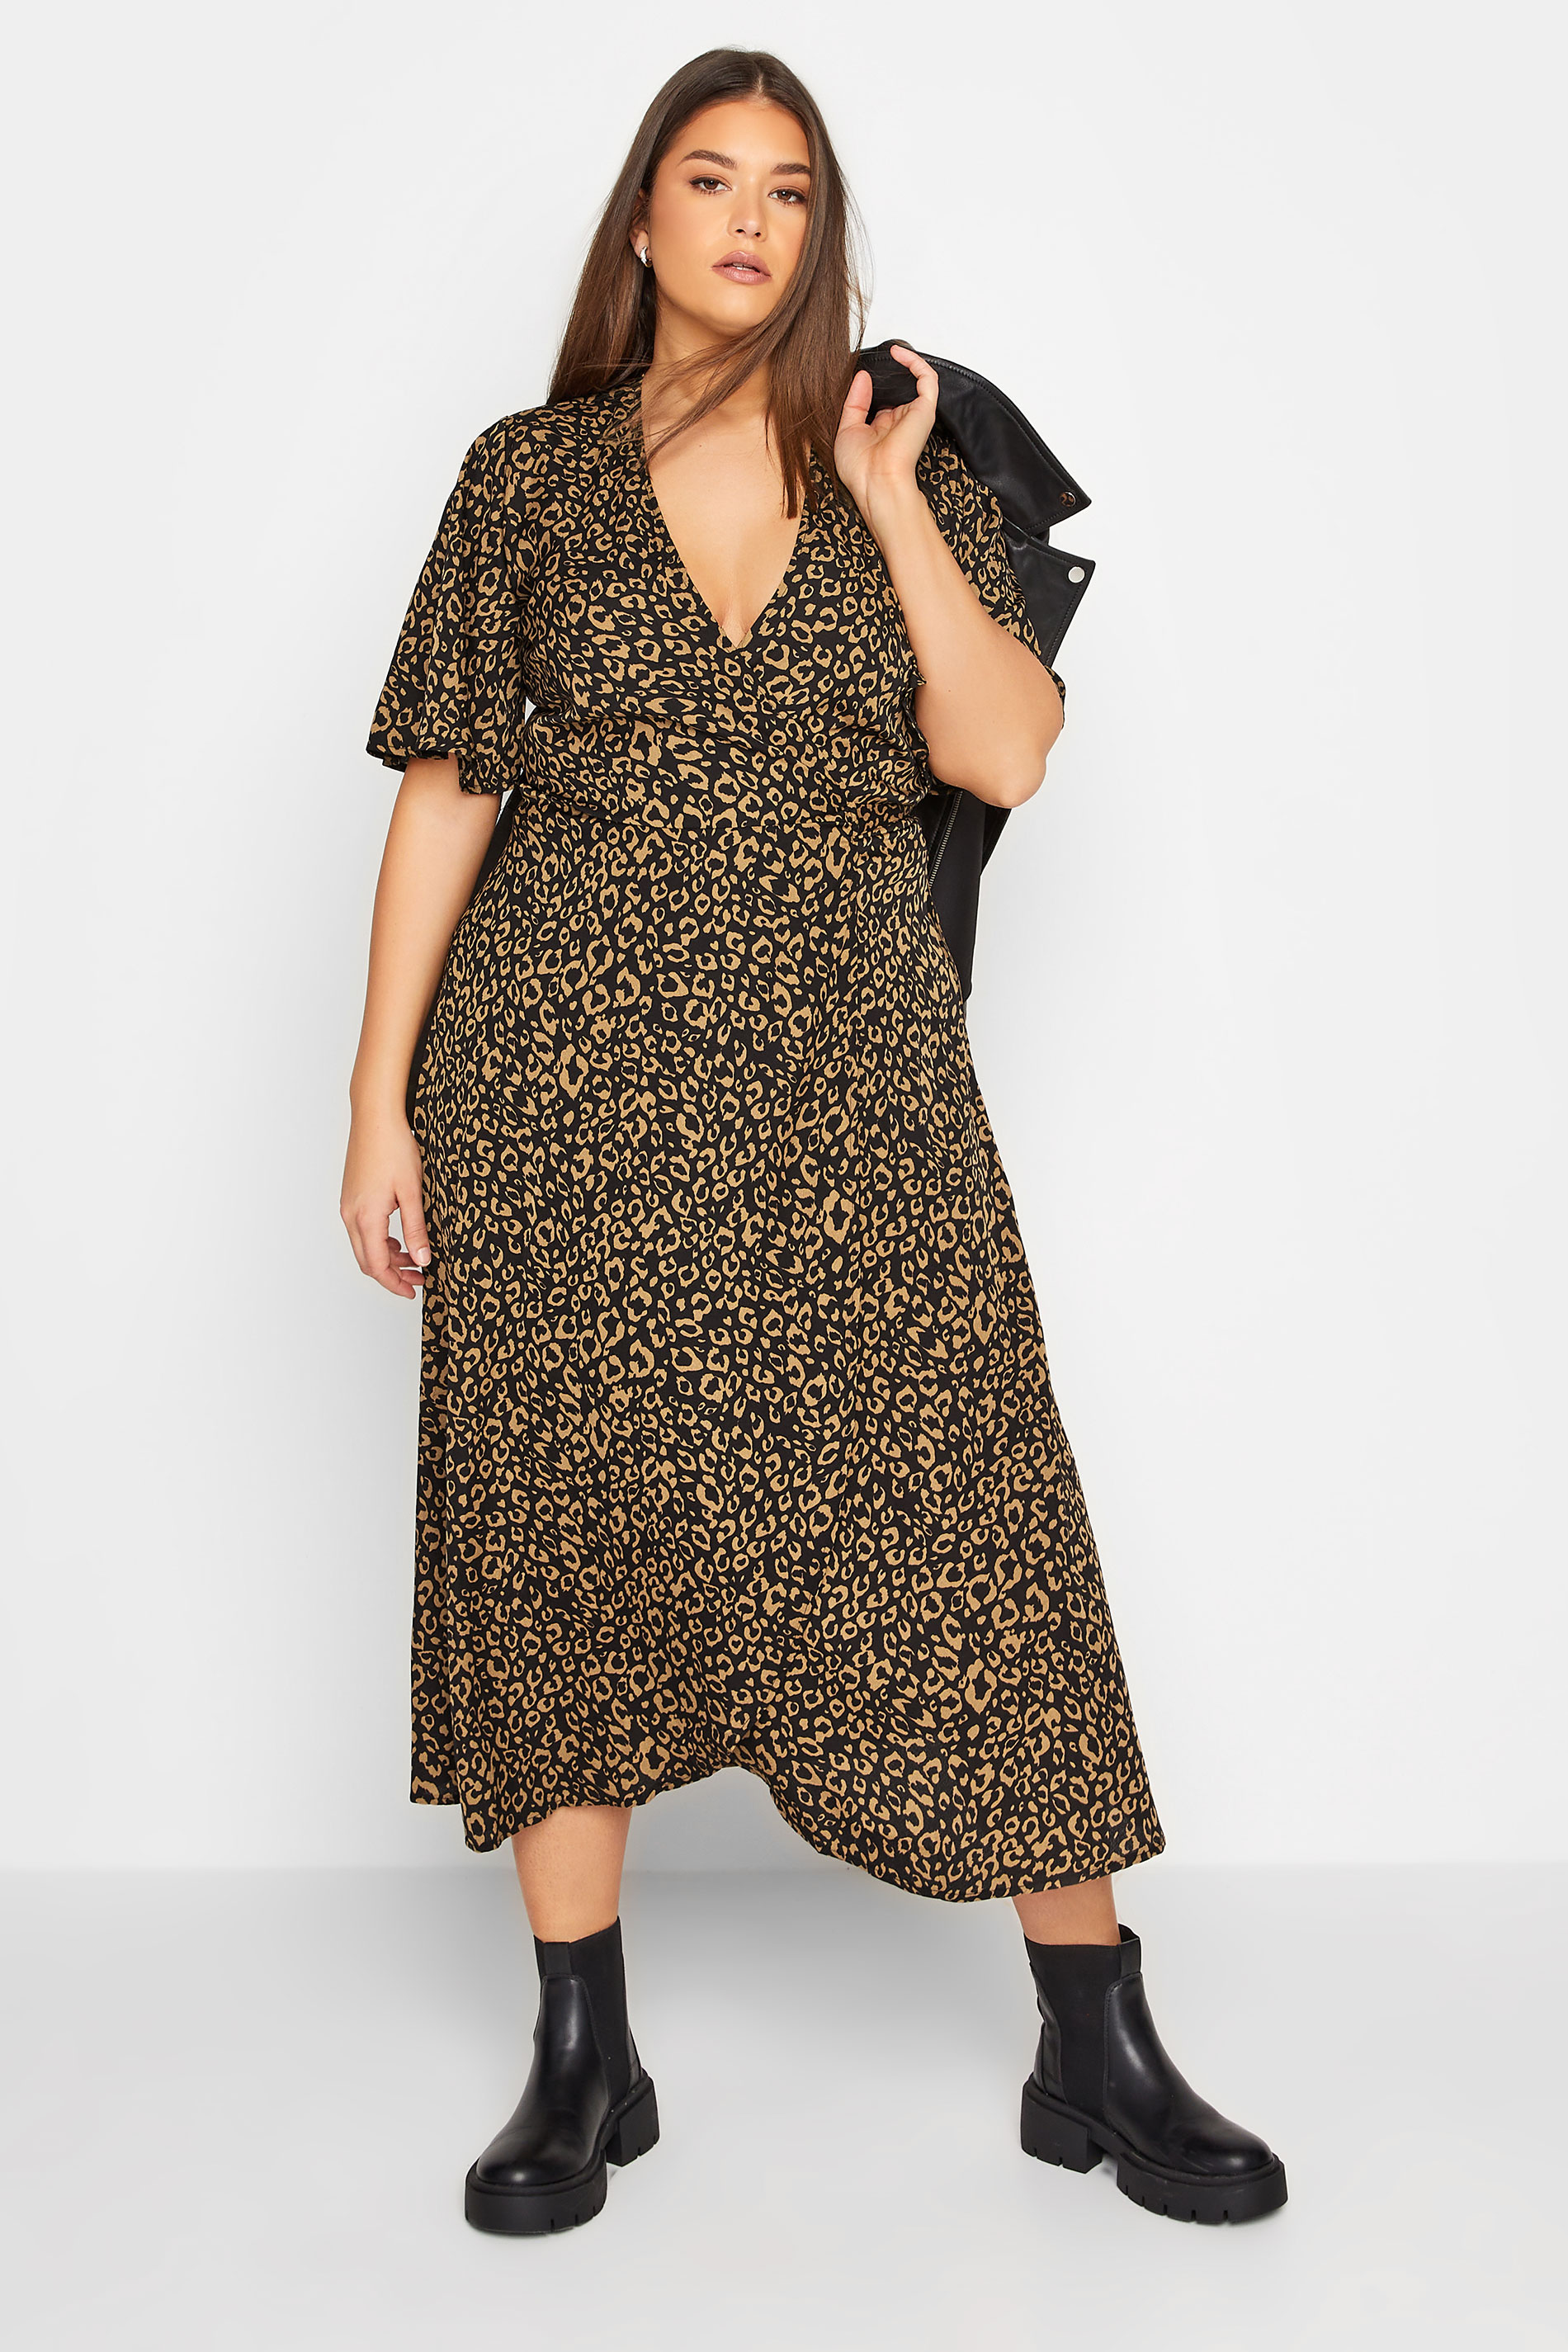 LTS Tall Women's Black Leopard Print Midaxi Wrap Dress | Long Tall Sally 1